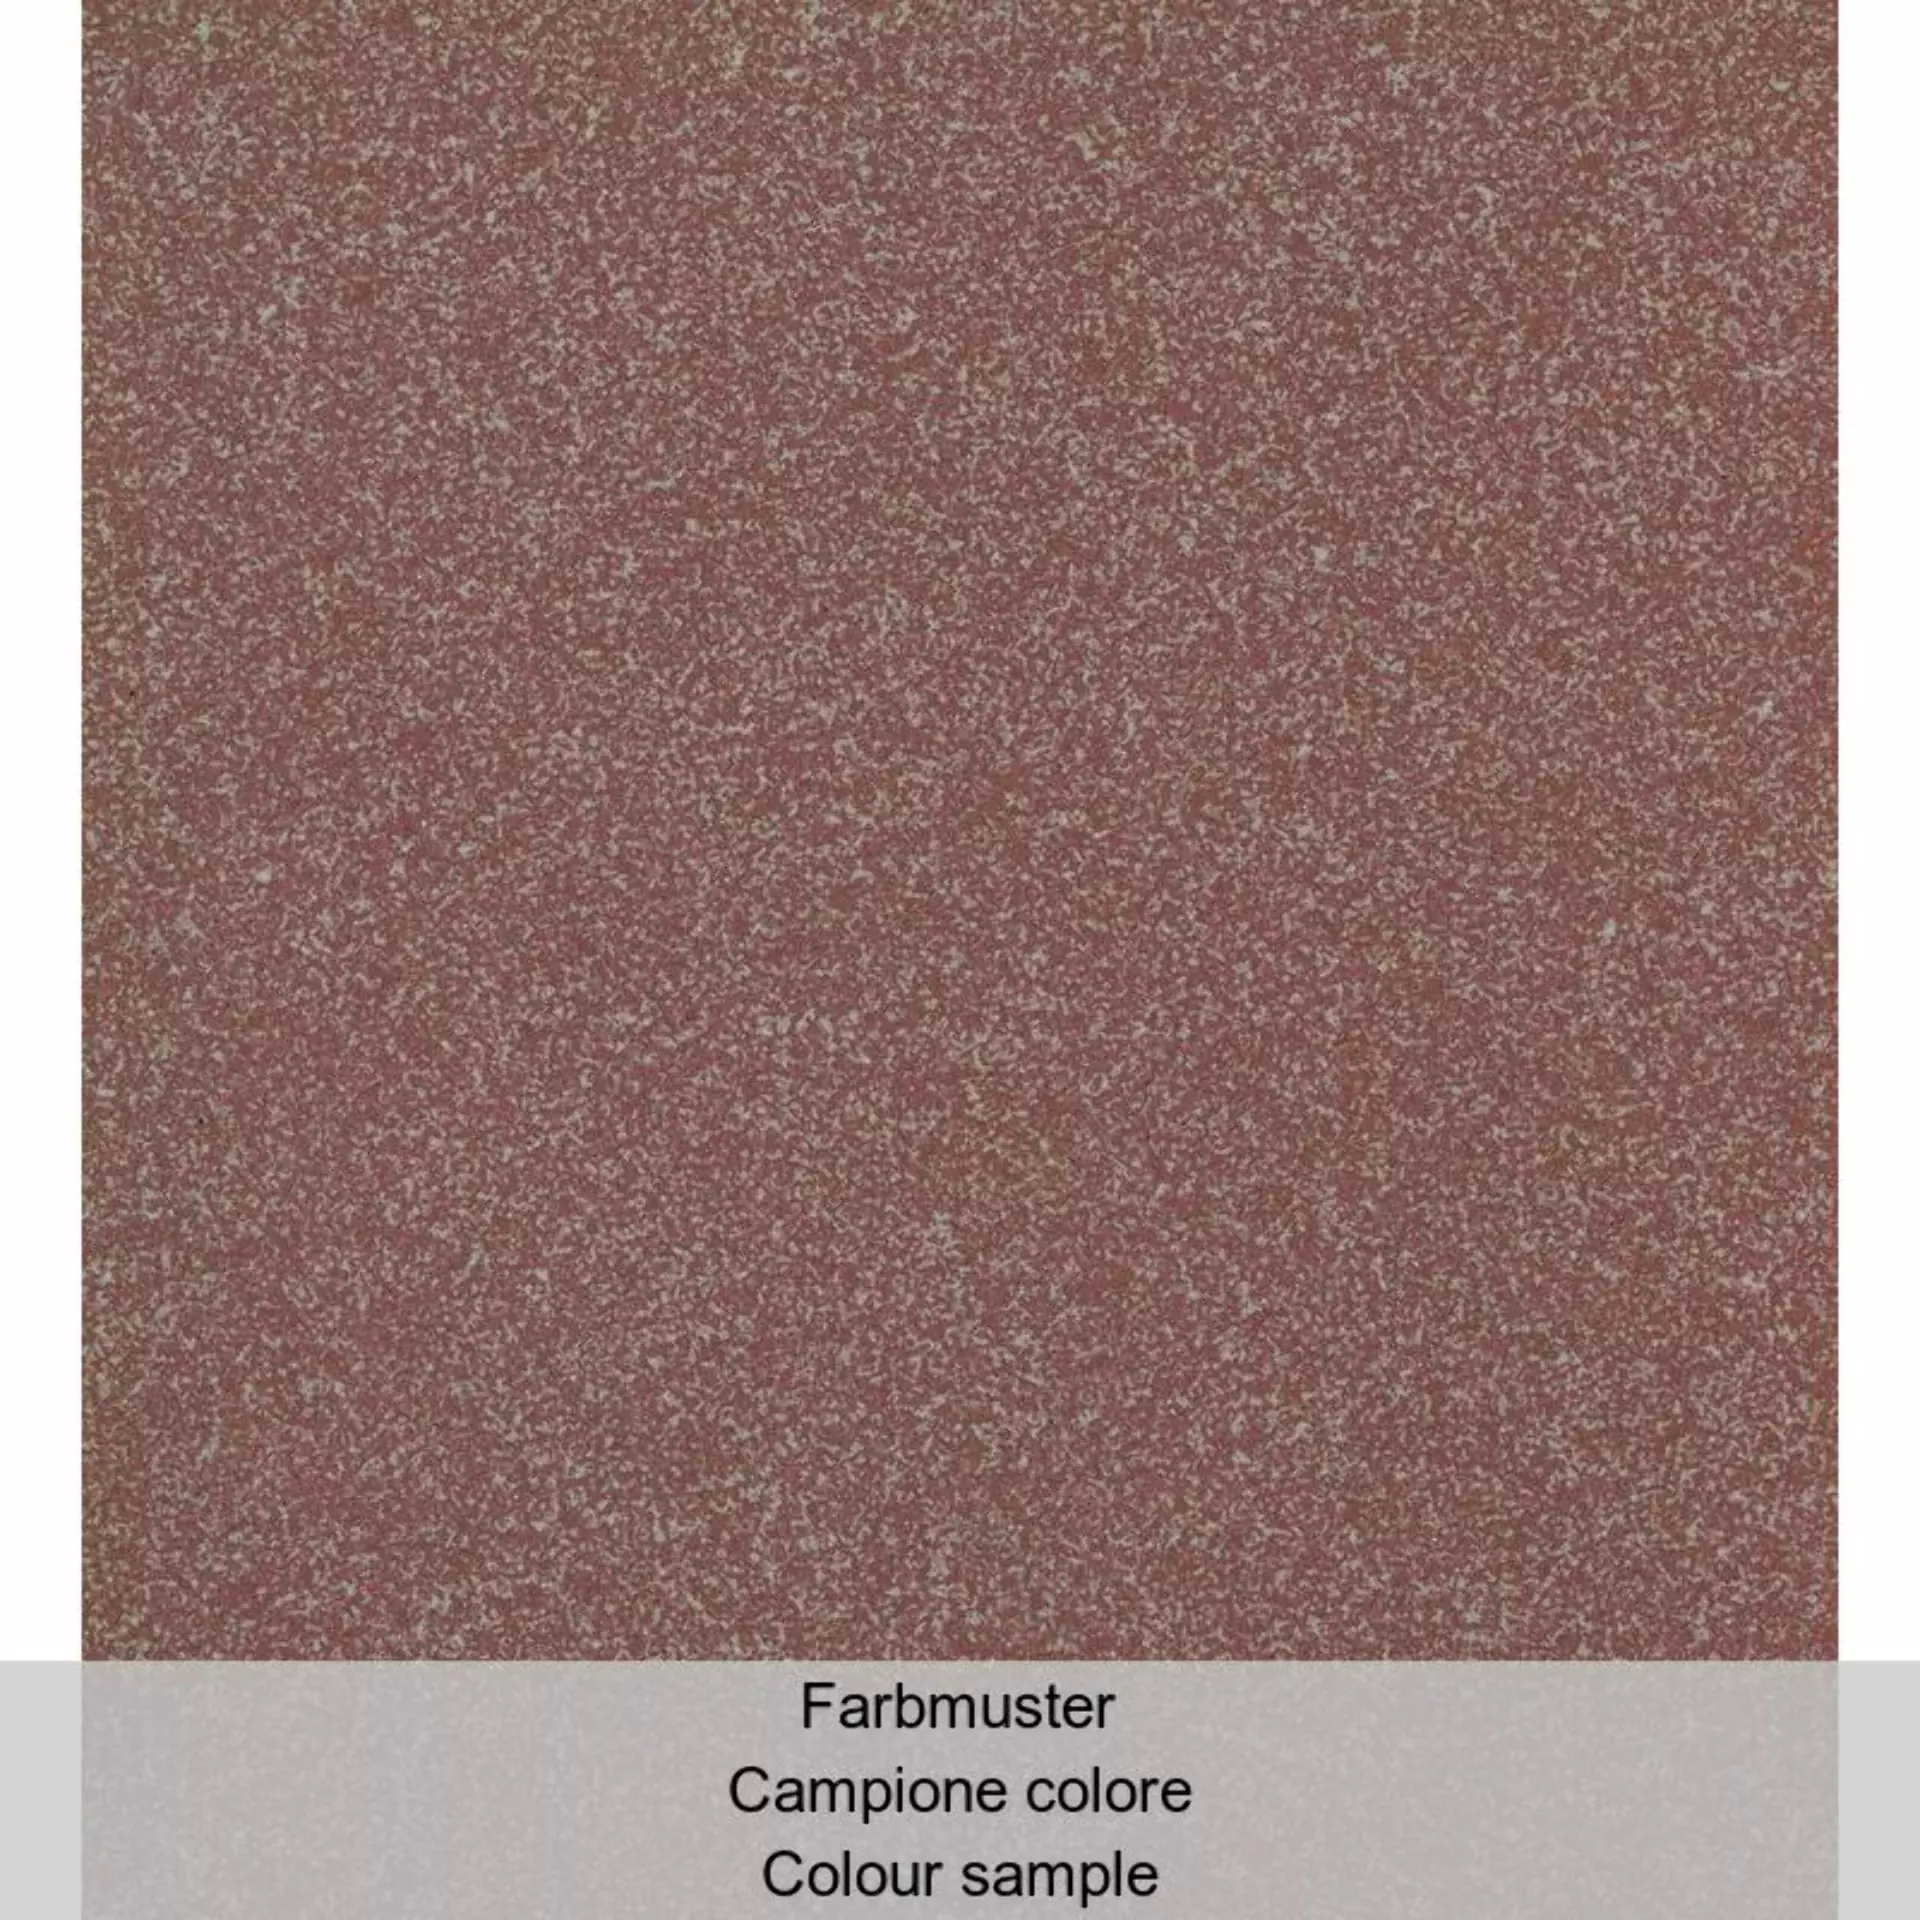 Casalgrande Granito 1 Colorado Naturale – Matt 400028 20x20cm 8mm